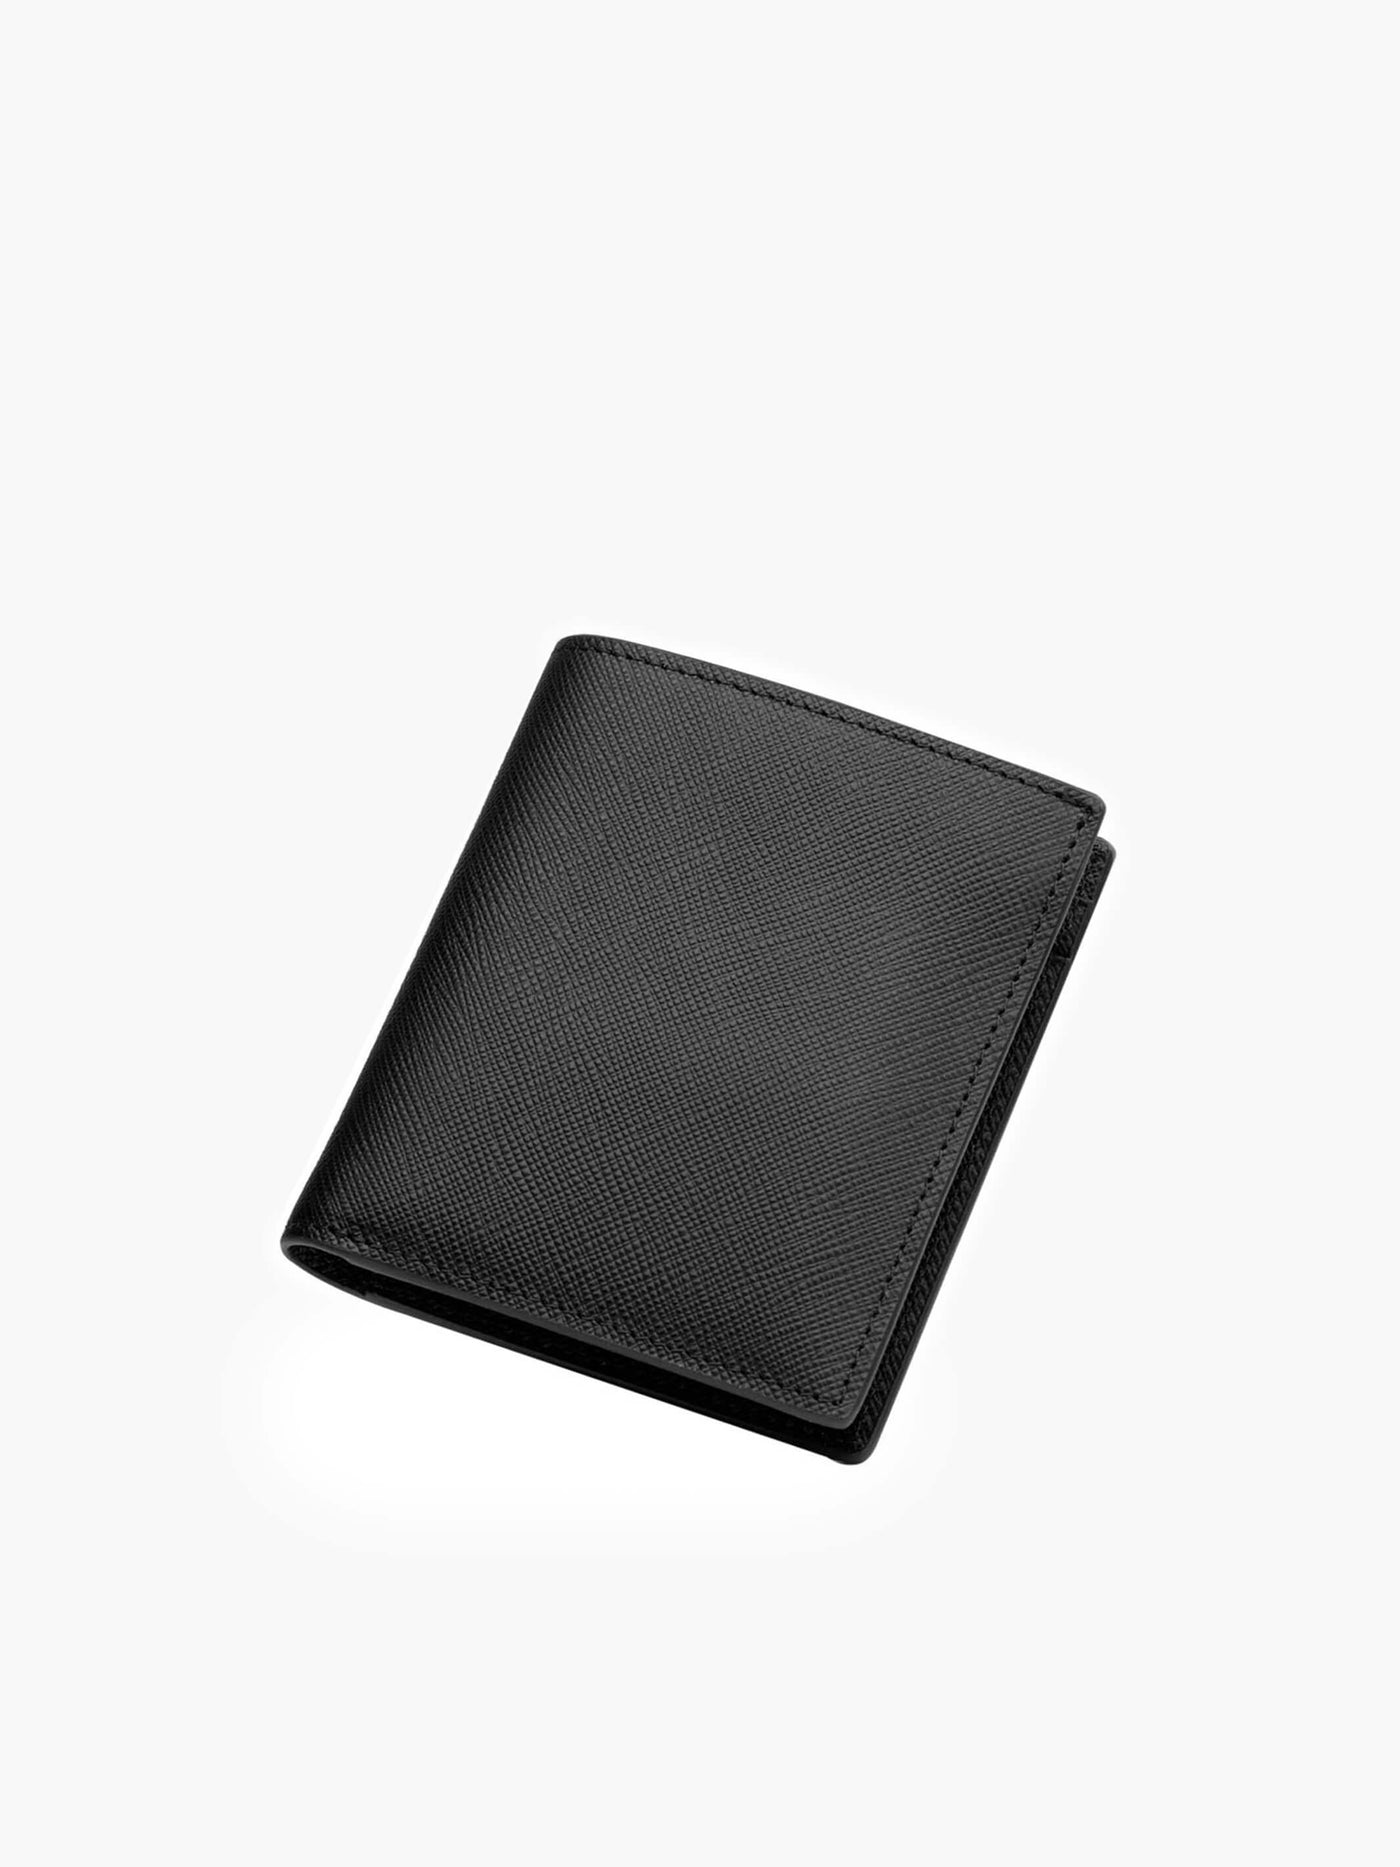 Maverick & Co. - Cosmopolitan Pocket Leather Wallet #color_all-black